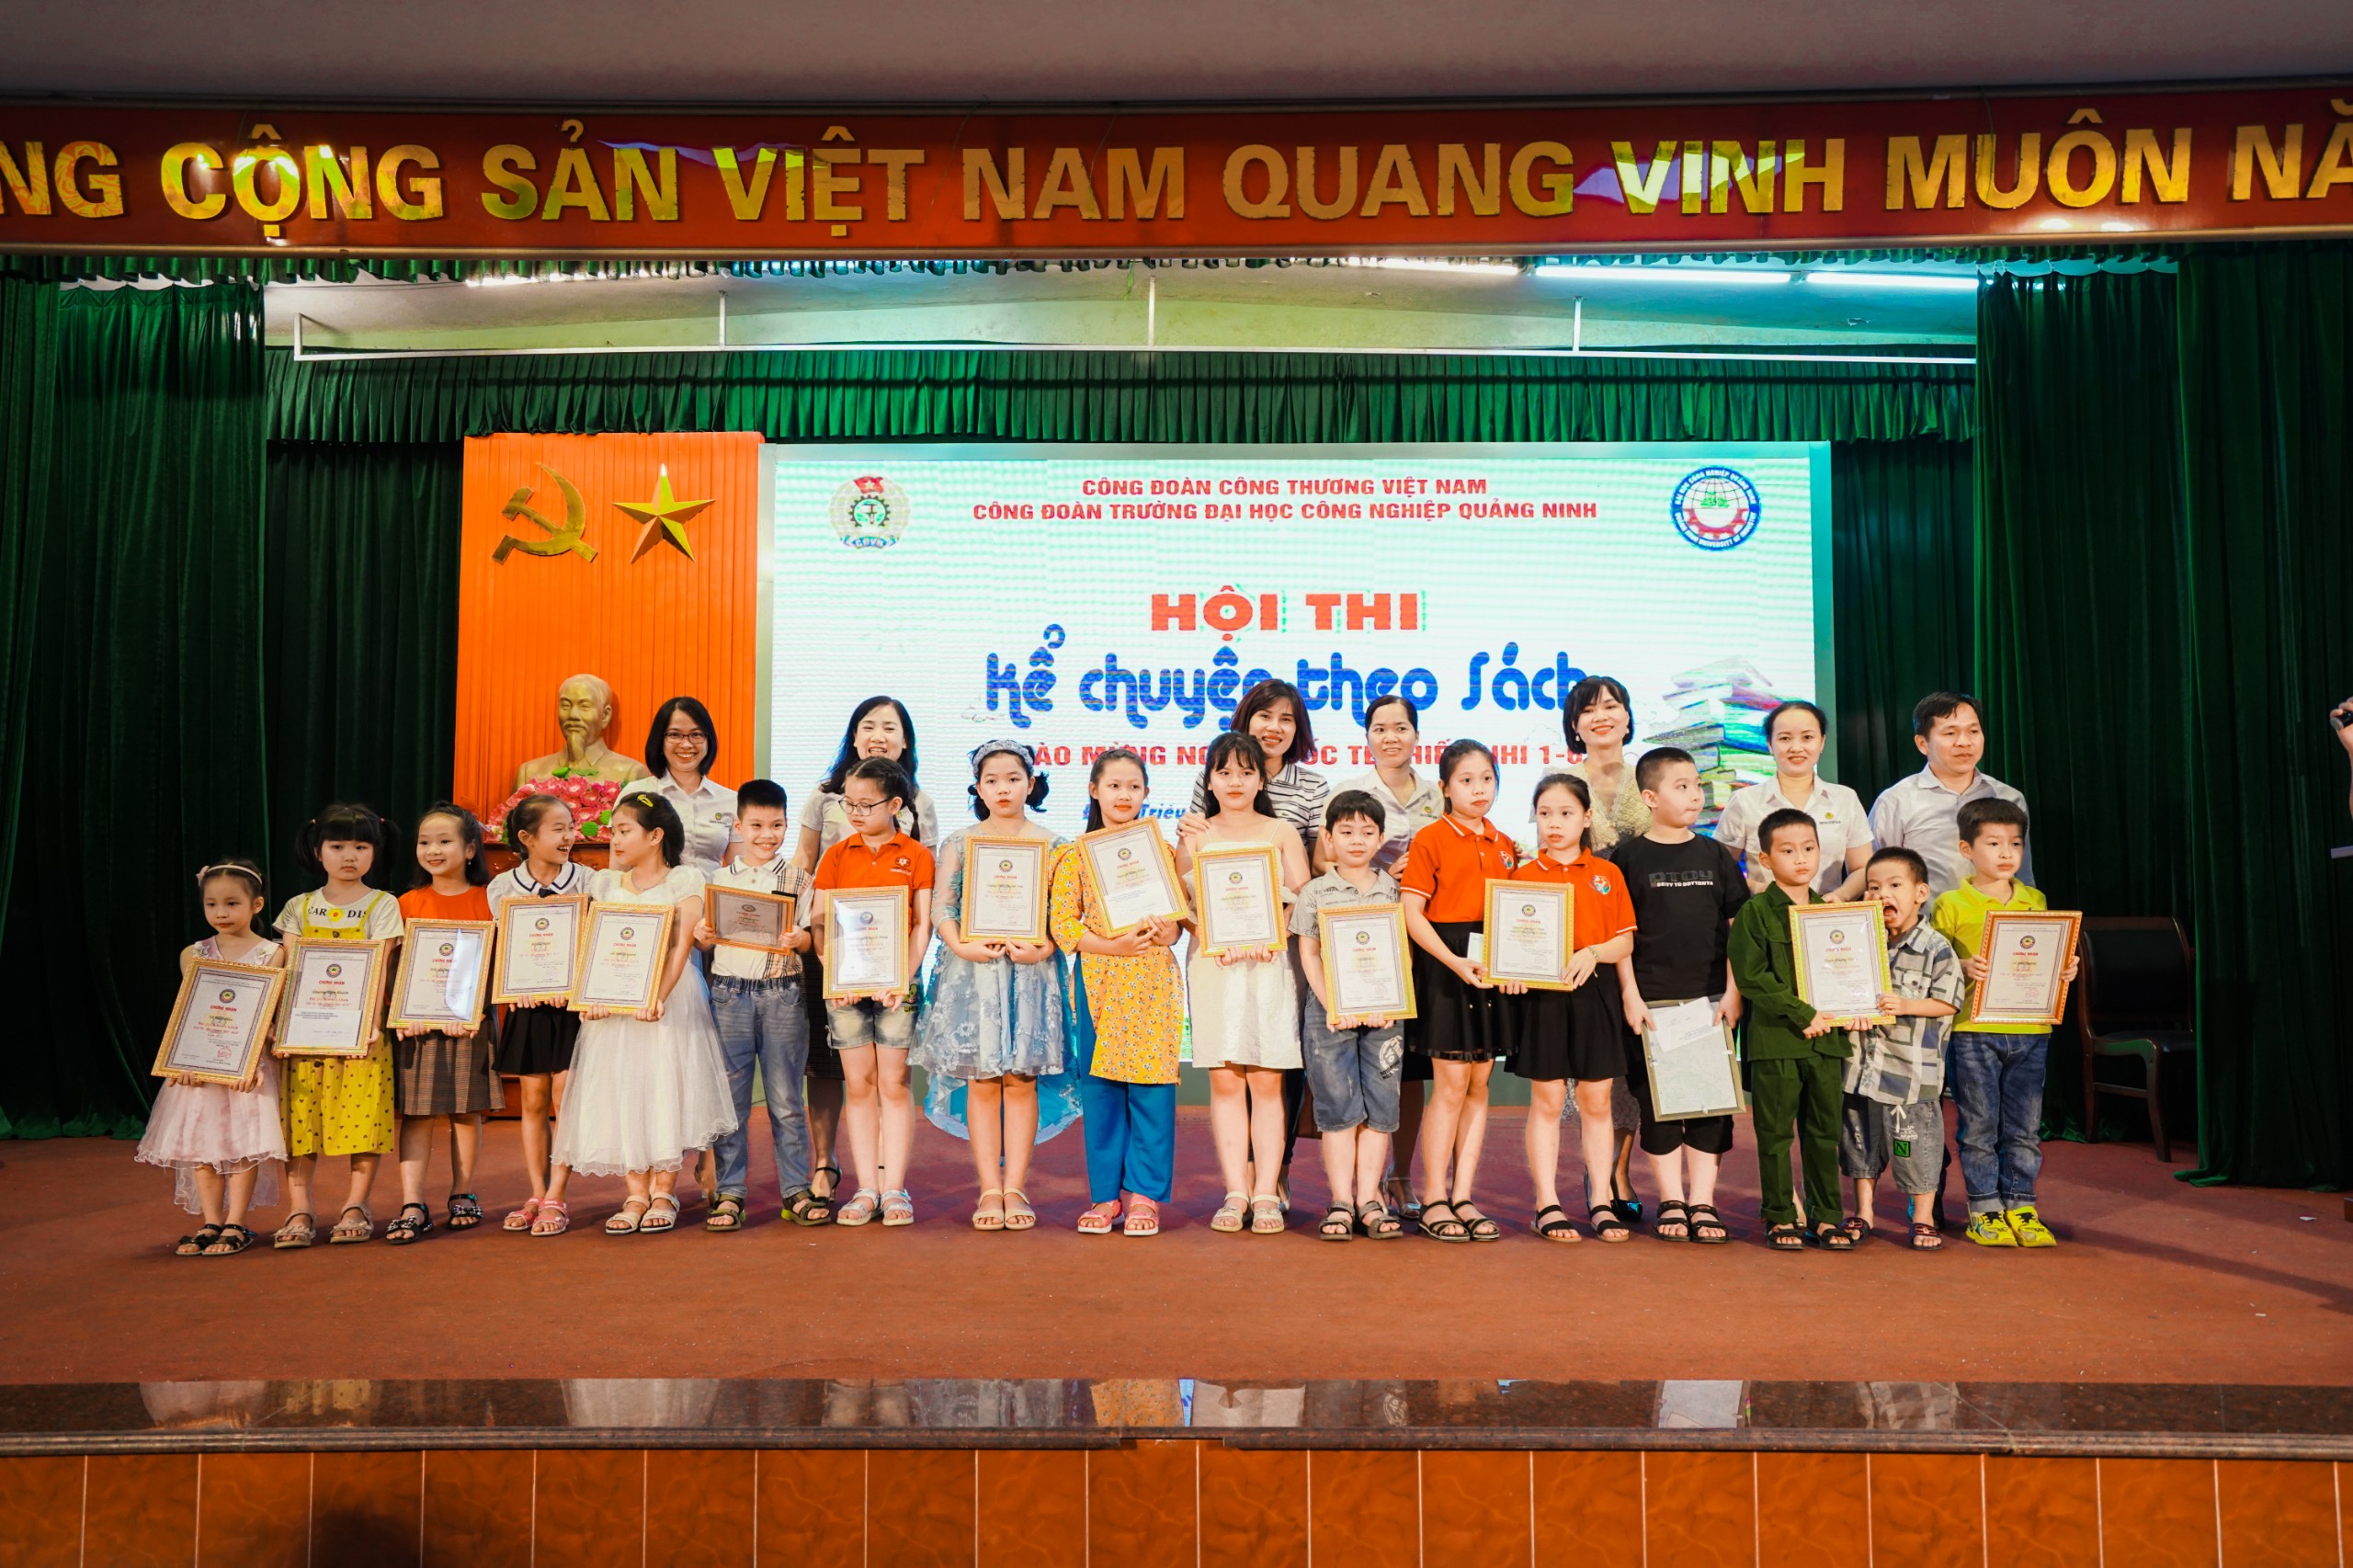 Công đoàn Trường Đại học Công nghiệp Quảng Ninh tổ chức thành công  Hội thi “Kể chuyện theo sách”